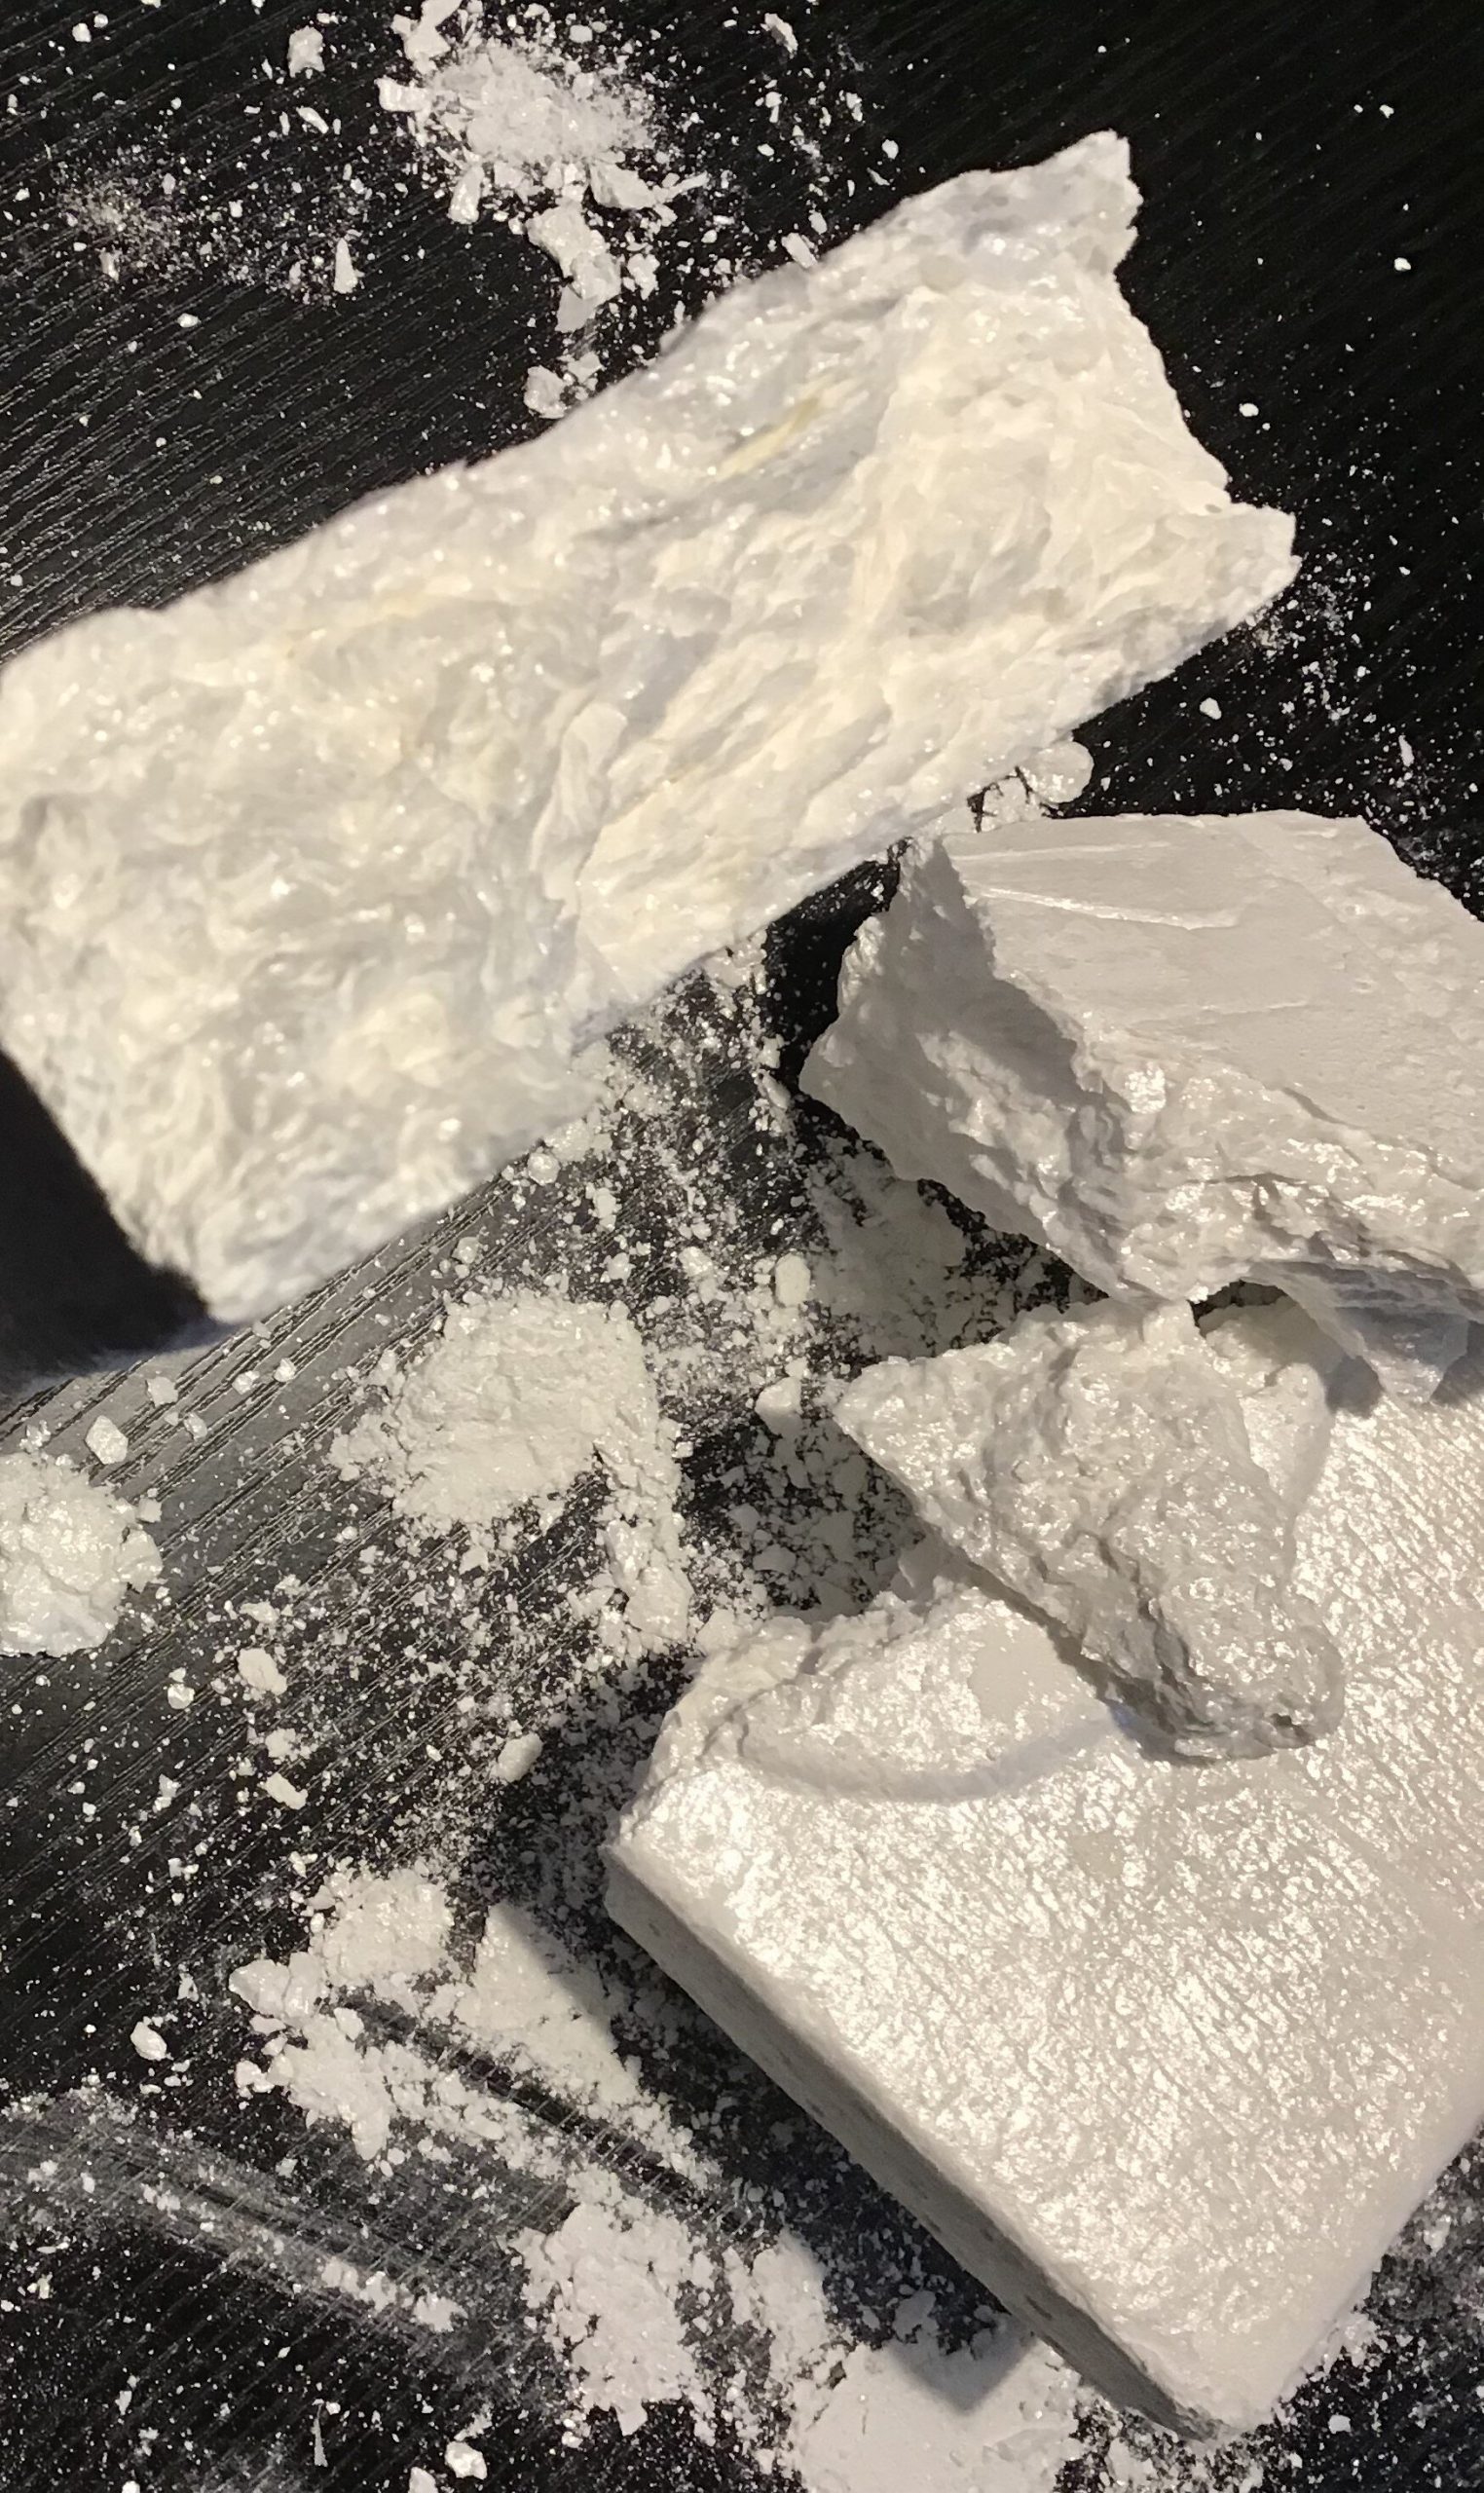 Blackdrugs.to | Kokain online/kaufen bestellen. - könnt ihr Bestes Kokain +90% Reinheit bequem von Zuhause aus bestellen per Bitcoin